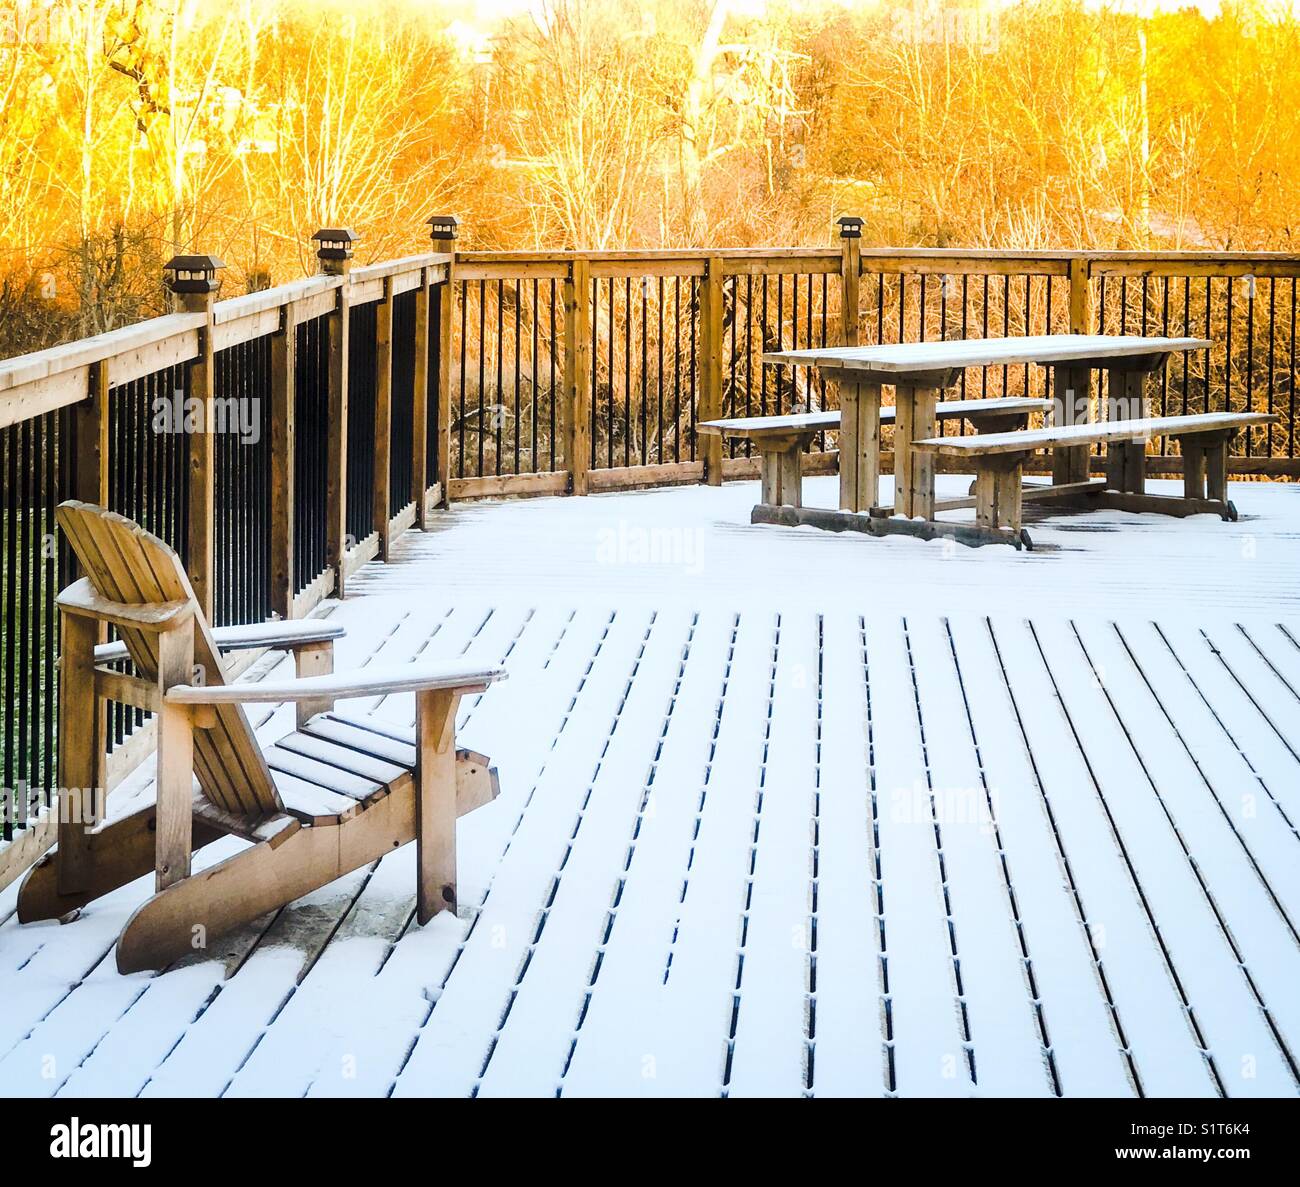 Terrasse en bois avec table de pique-nique et Adirondack (Muskoka) président légèrement recouvertes de neige au coucher de soleil avec les arbres lumineux à l'arrière-plan Banque D'Images